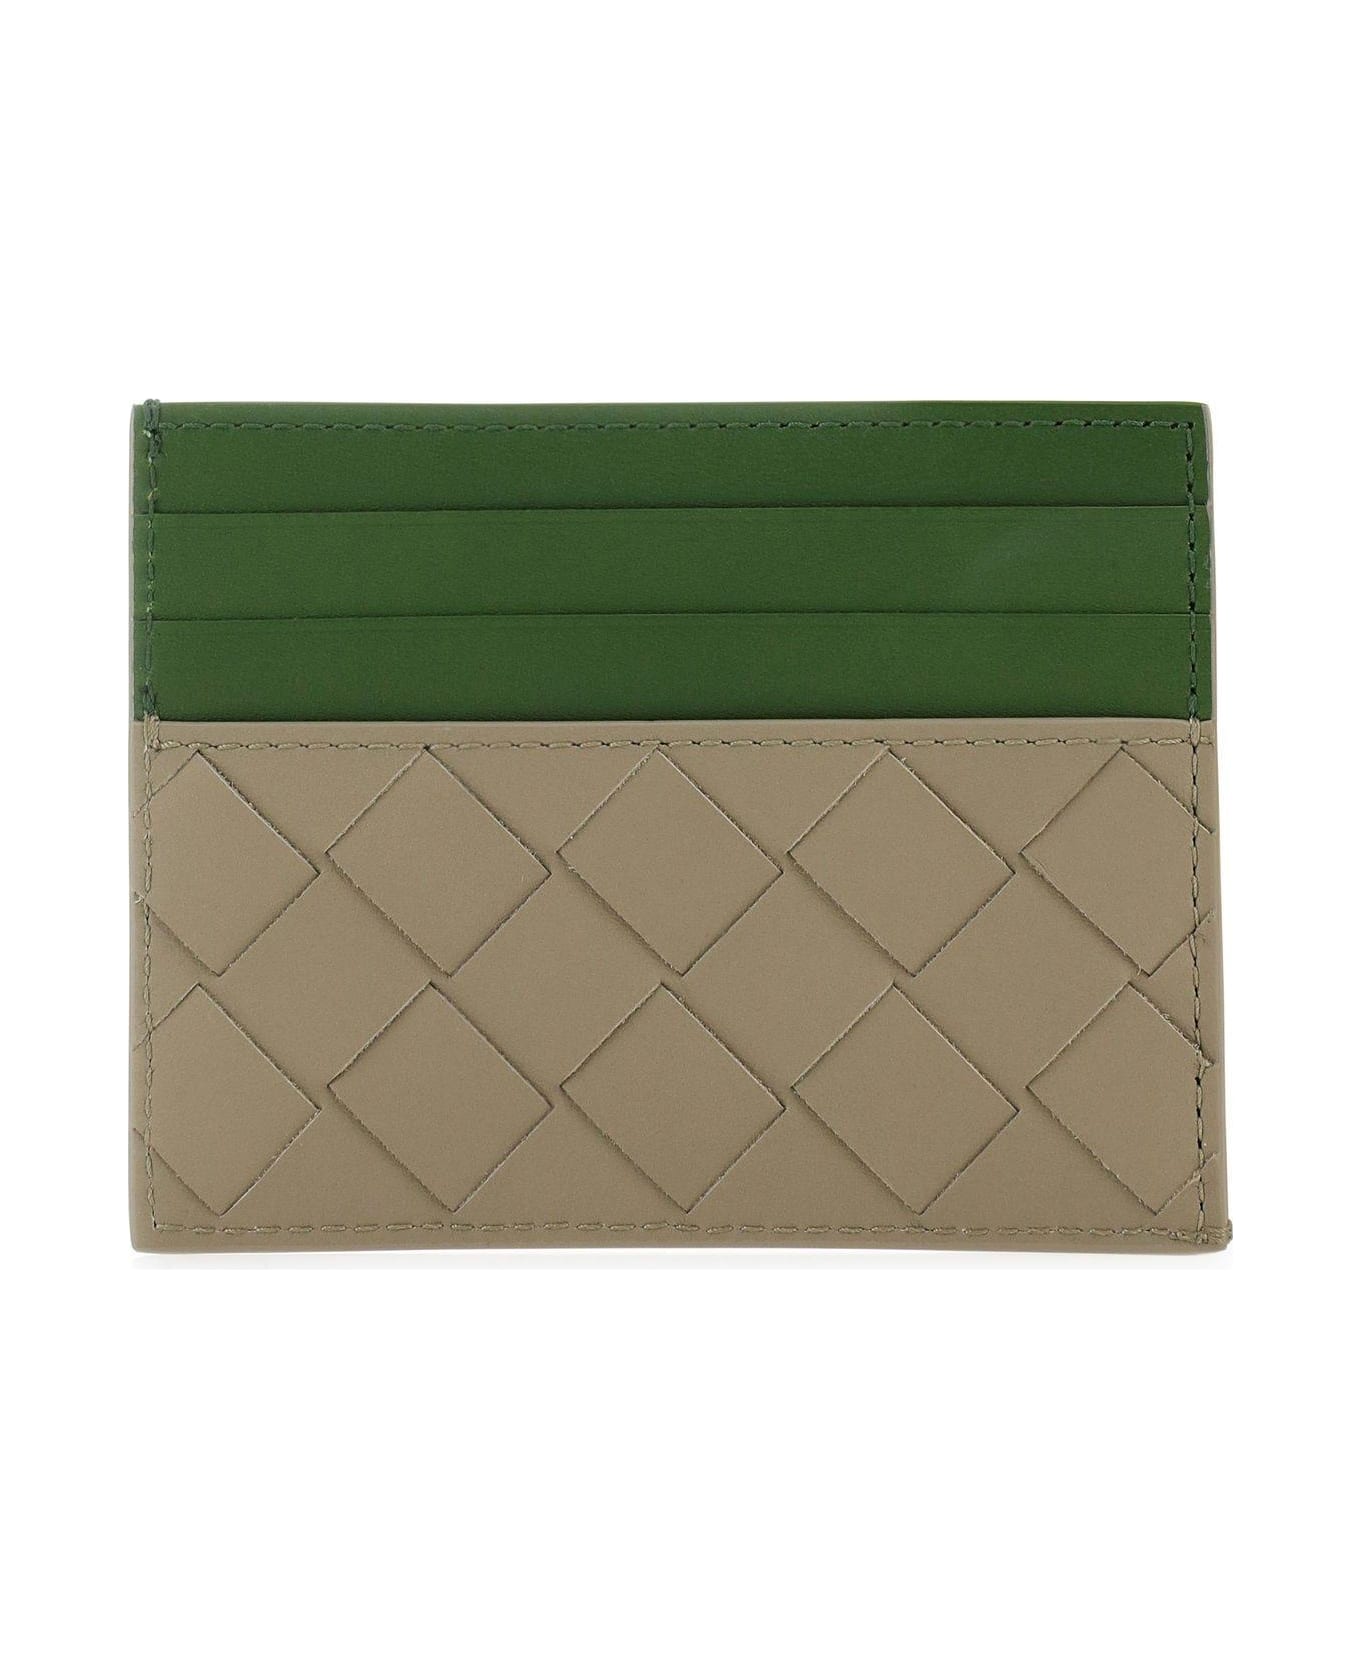 Bottega Veneta Two-tone Leather Card Holder 財布